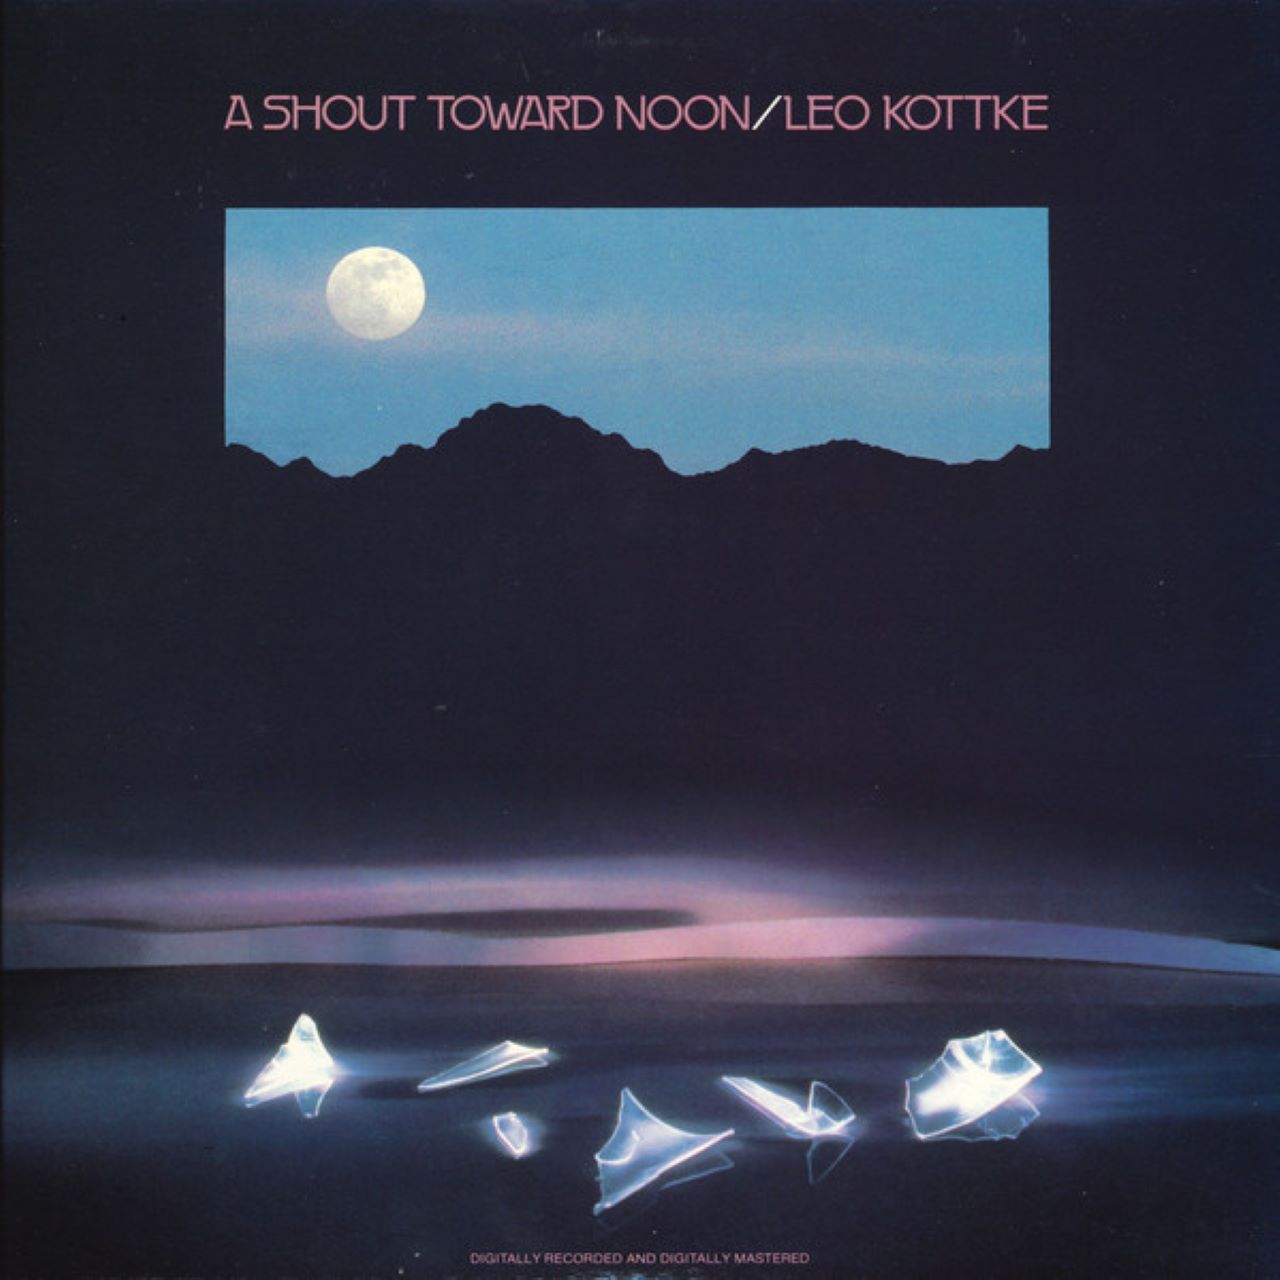 Leo Kottke - A Shout Toward Moon cover album